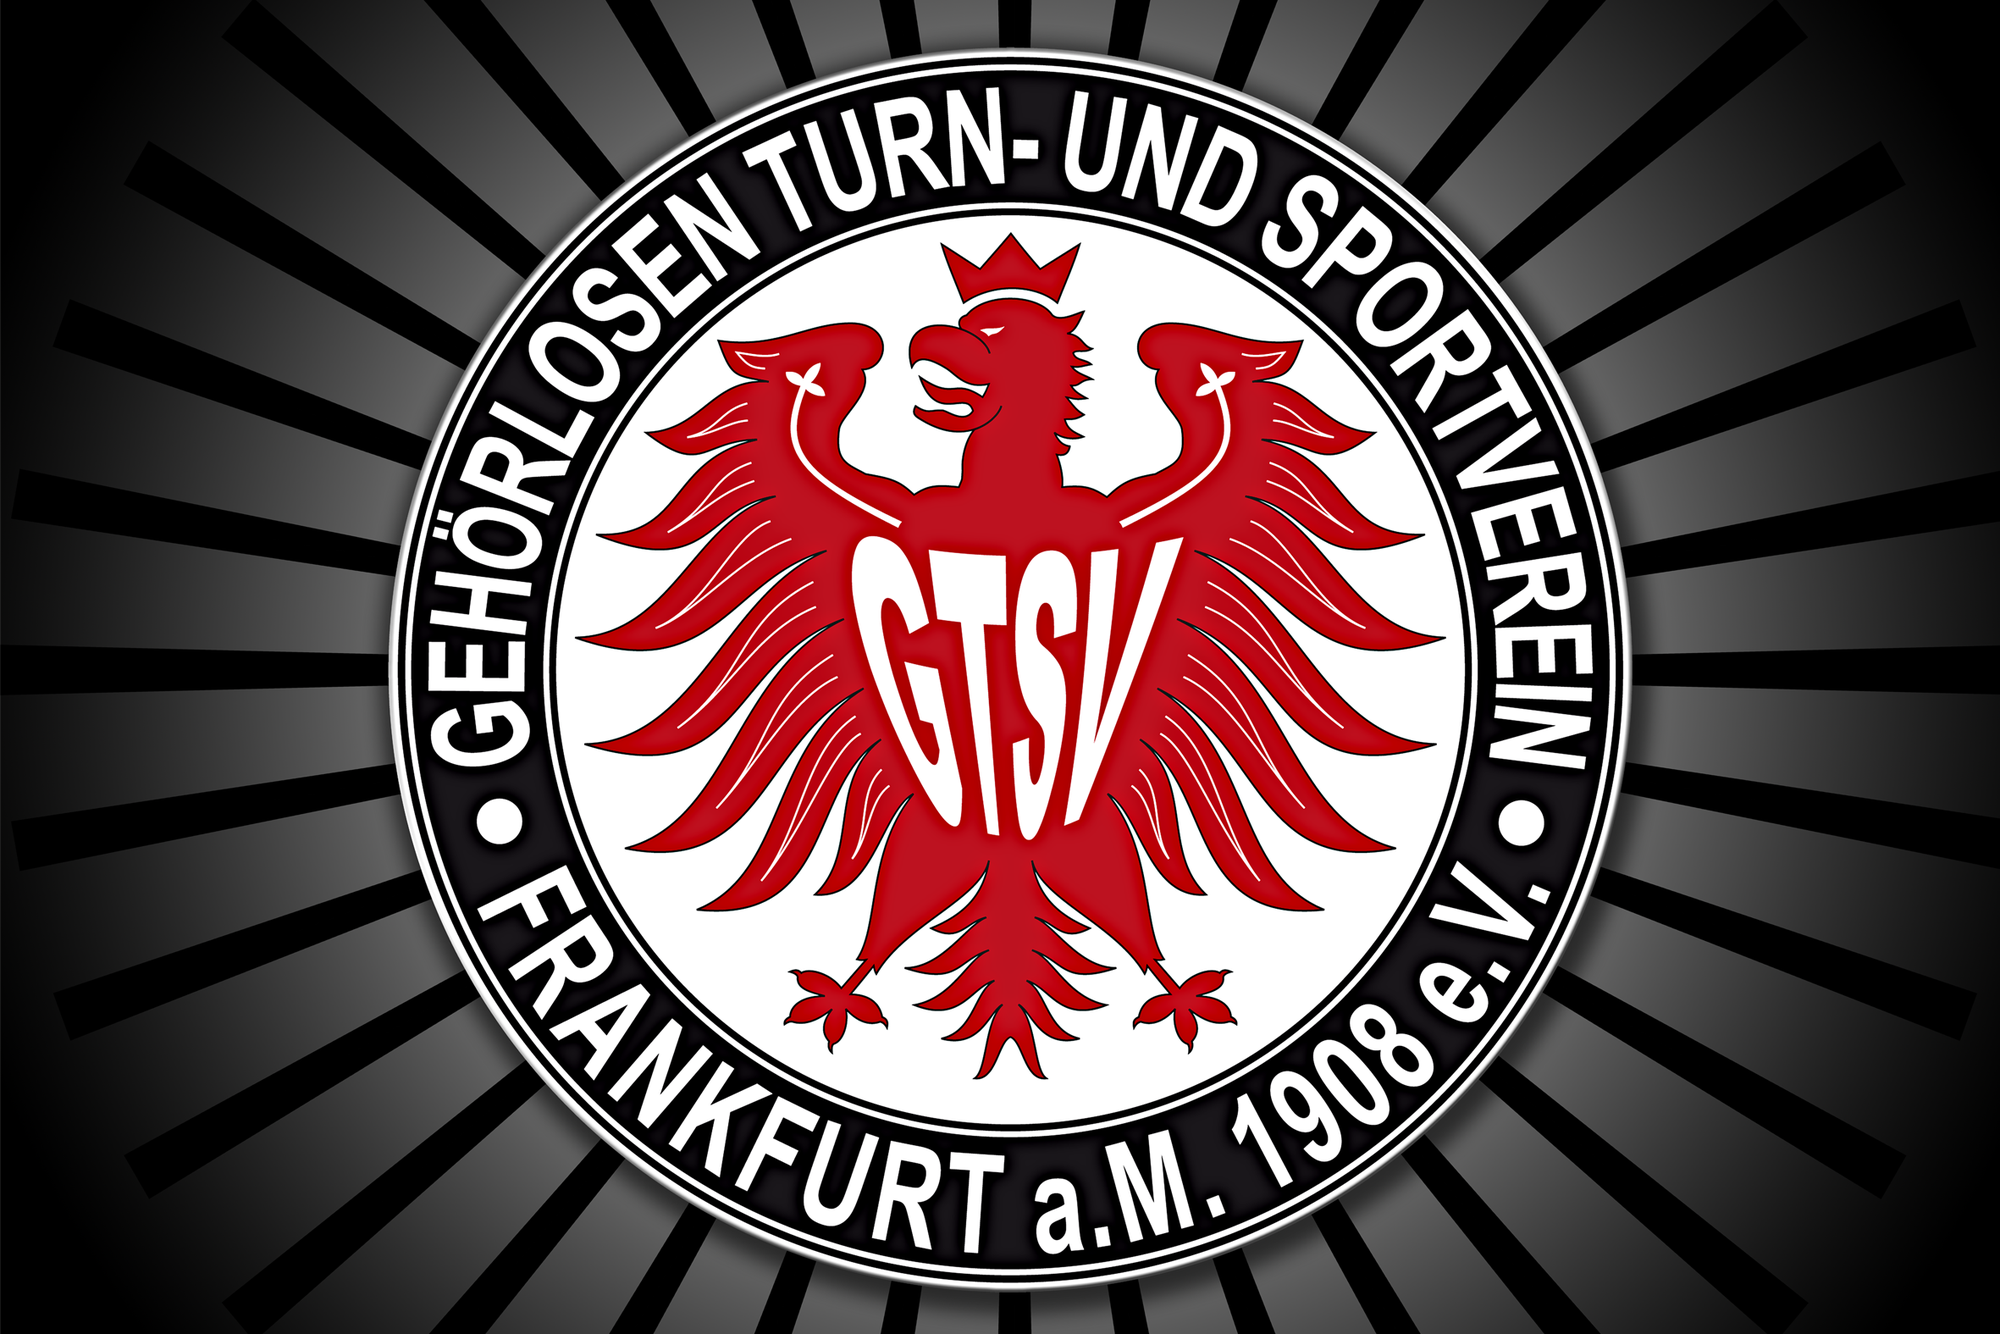 Zeitungsbericht von "Der Frankfurter" über unseren Verein